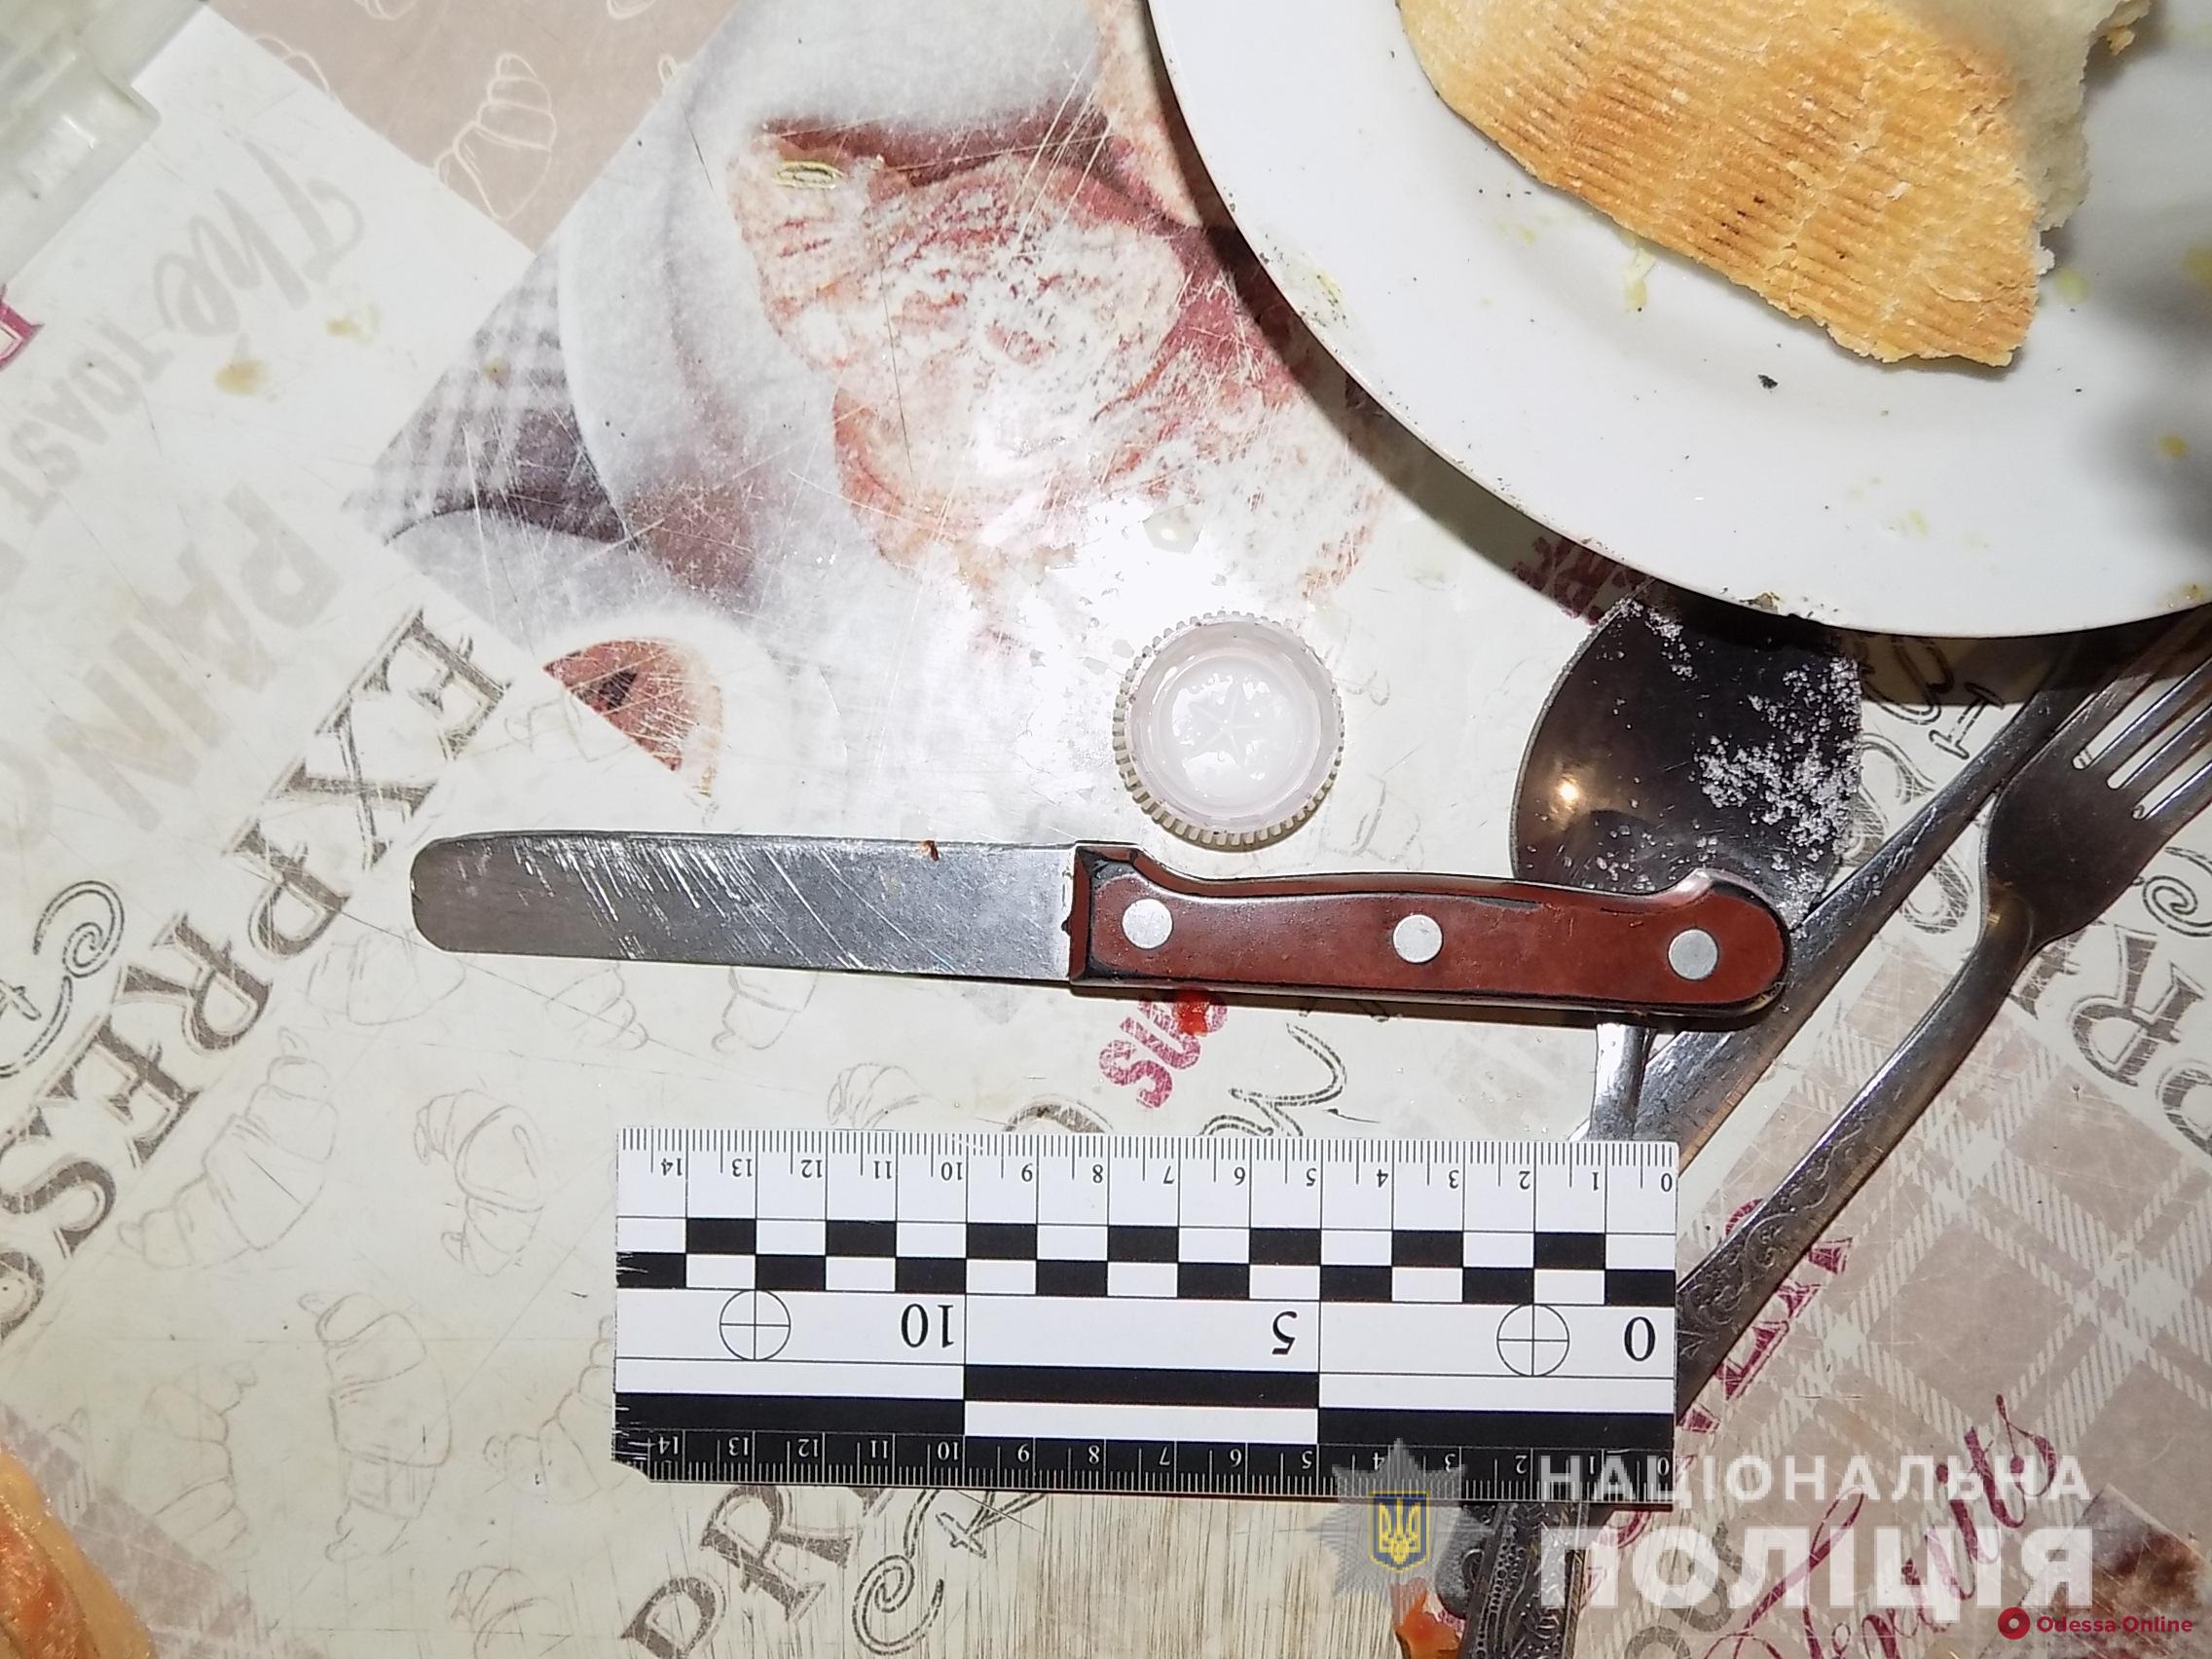 Едва не убил пасынка из-за сигарет: в Белгород-Днестровском районе задержали 60-летнего мужчину